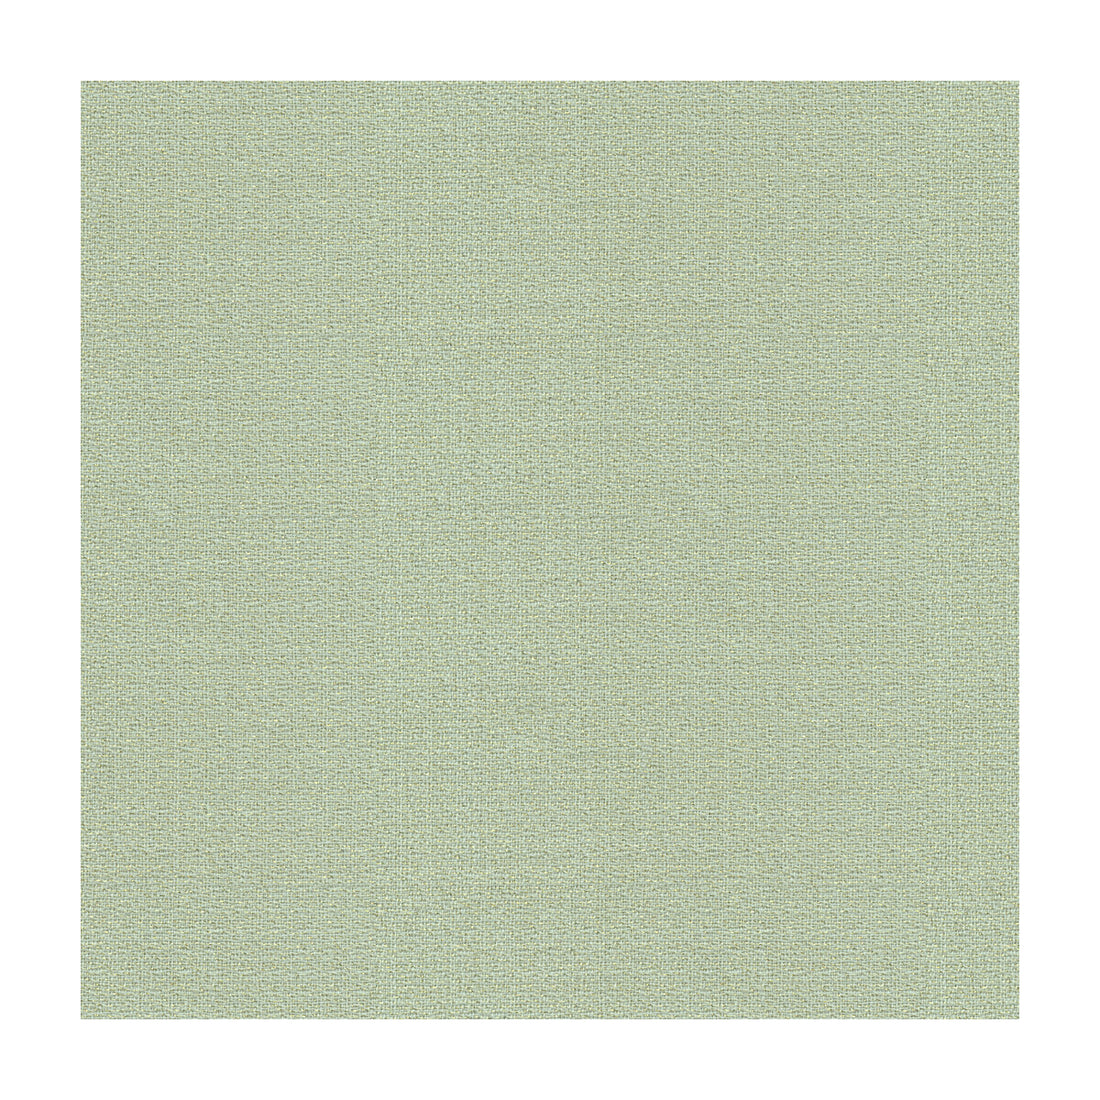 Glisten Wool fabric in moonstruck color - pattern GWF-3045.15.0 - by Lee Jofa Modern